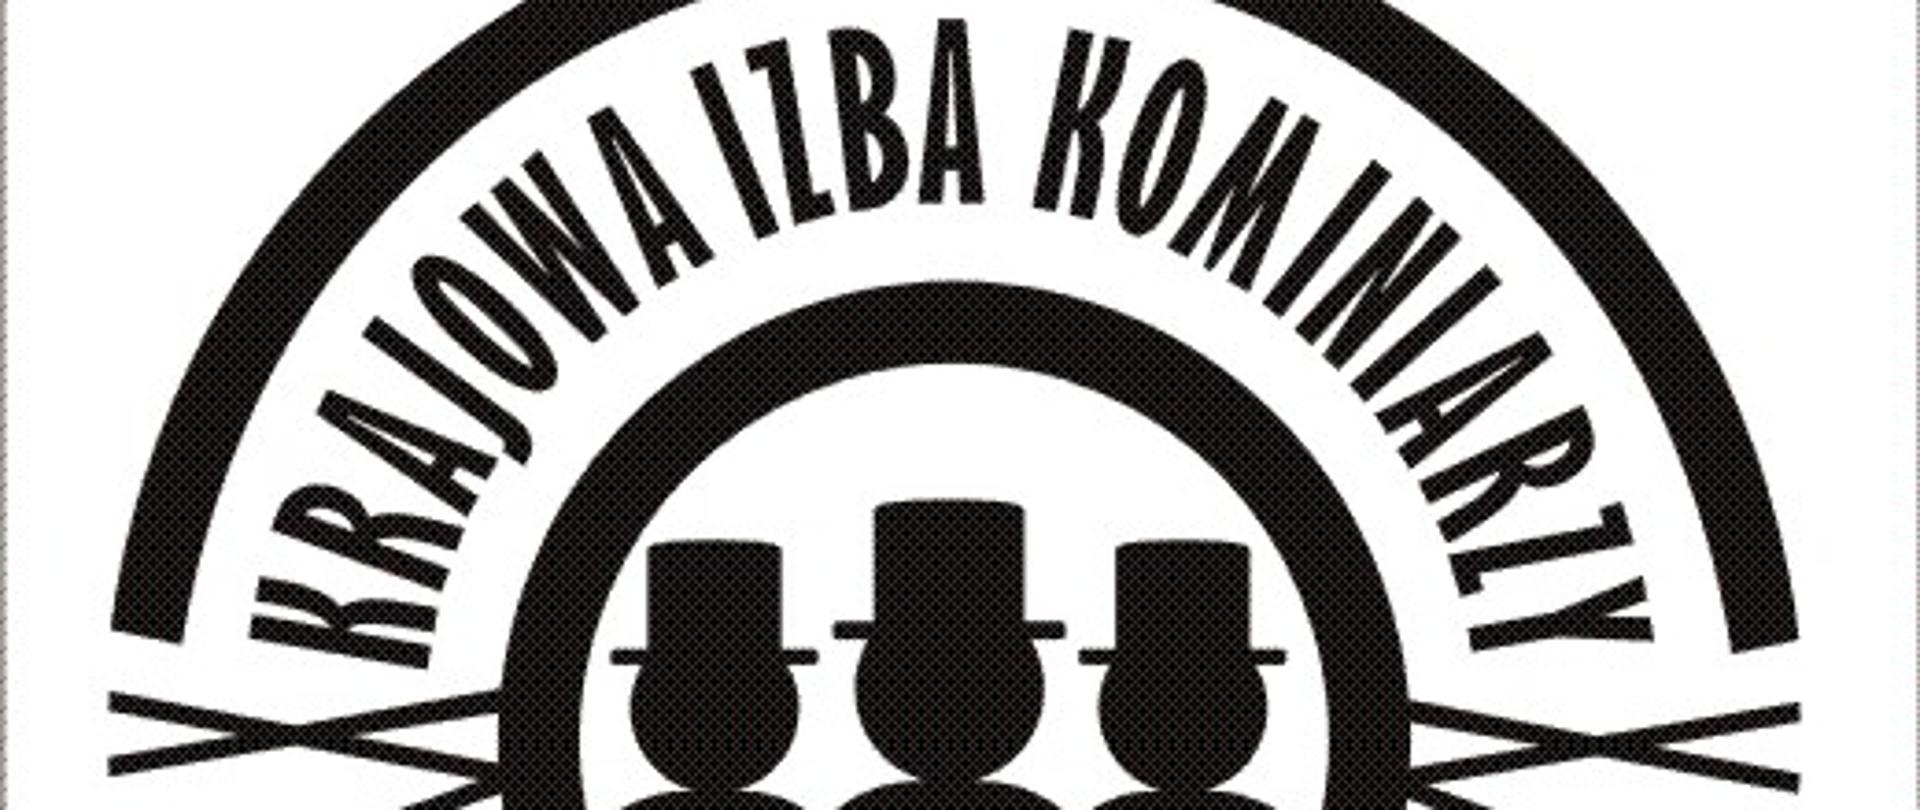 Logo Krajowej izby kominiarzy - trzech kominiarzy wpisanych w okrąg i napis krajowa izba kominiarzy